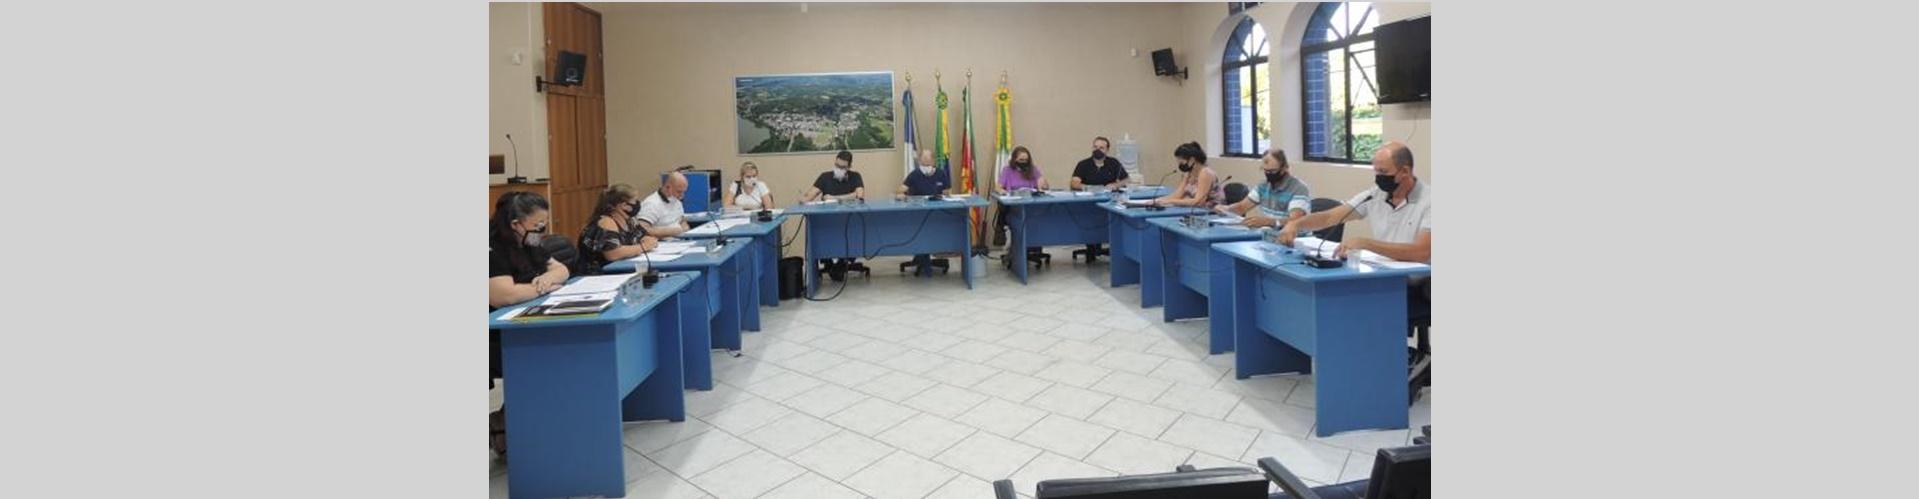 Foto da Câmara Municipal de Cruzeiro do Sul